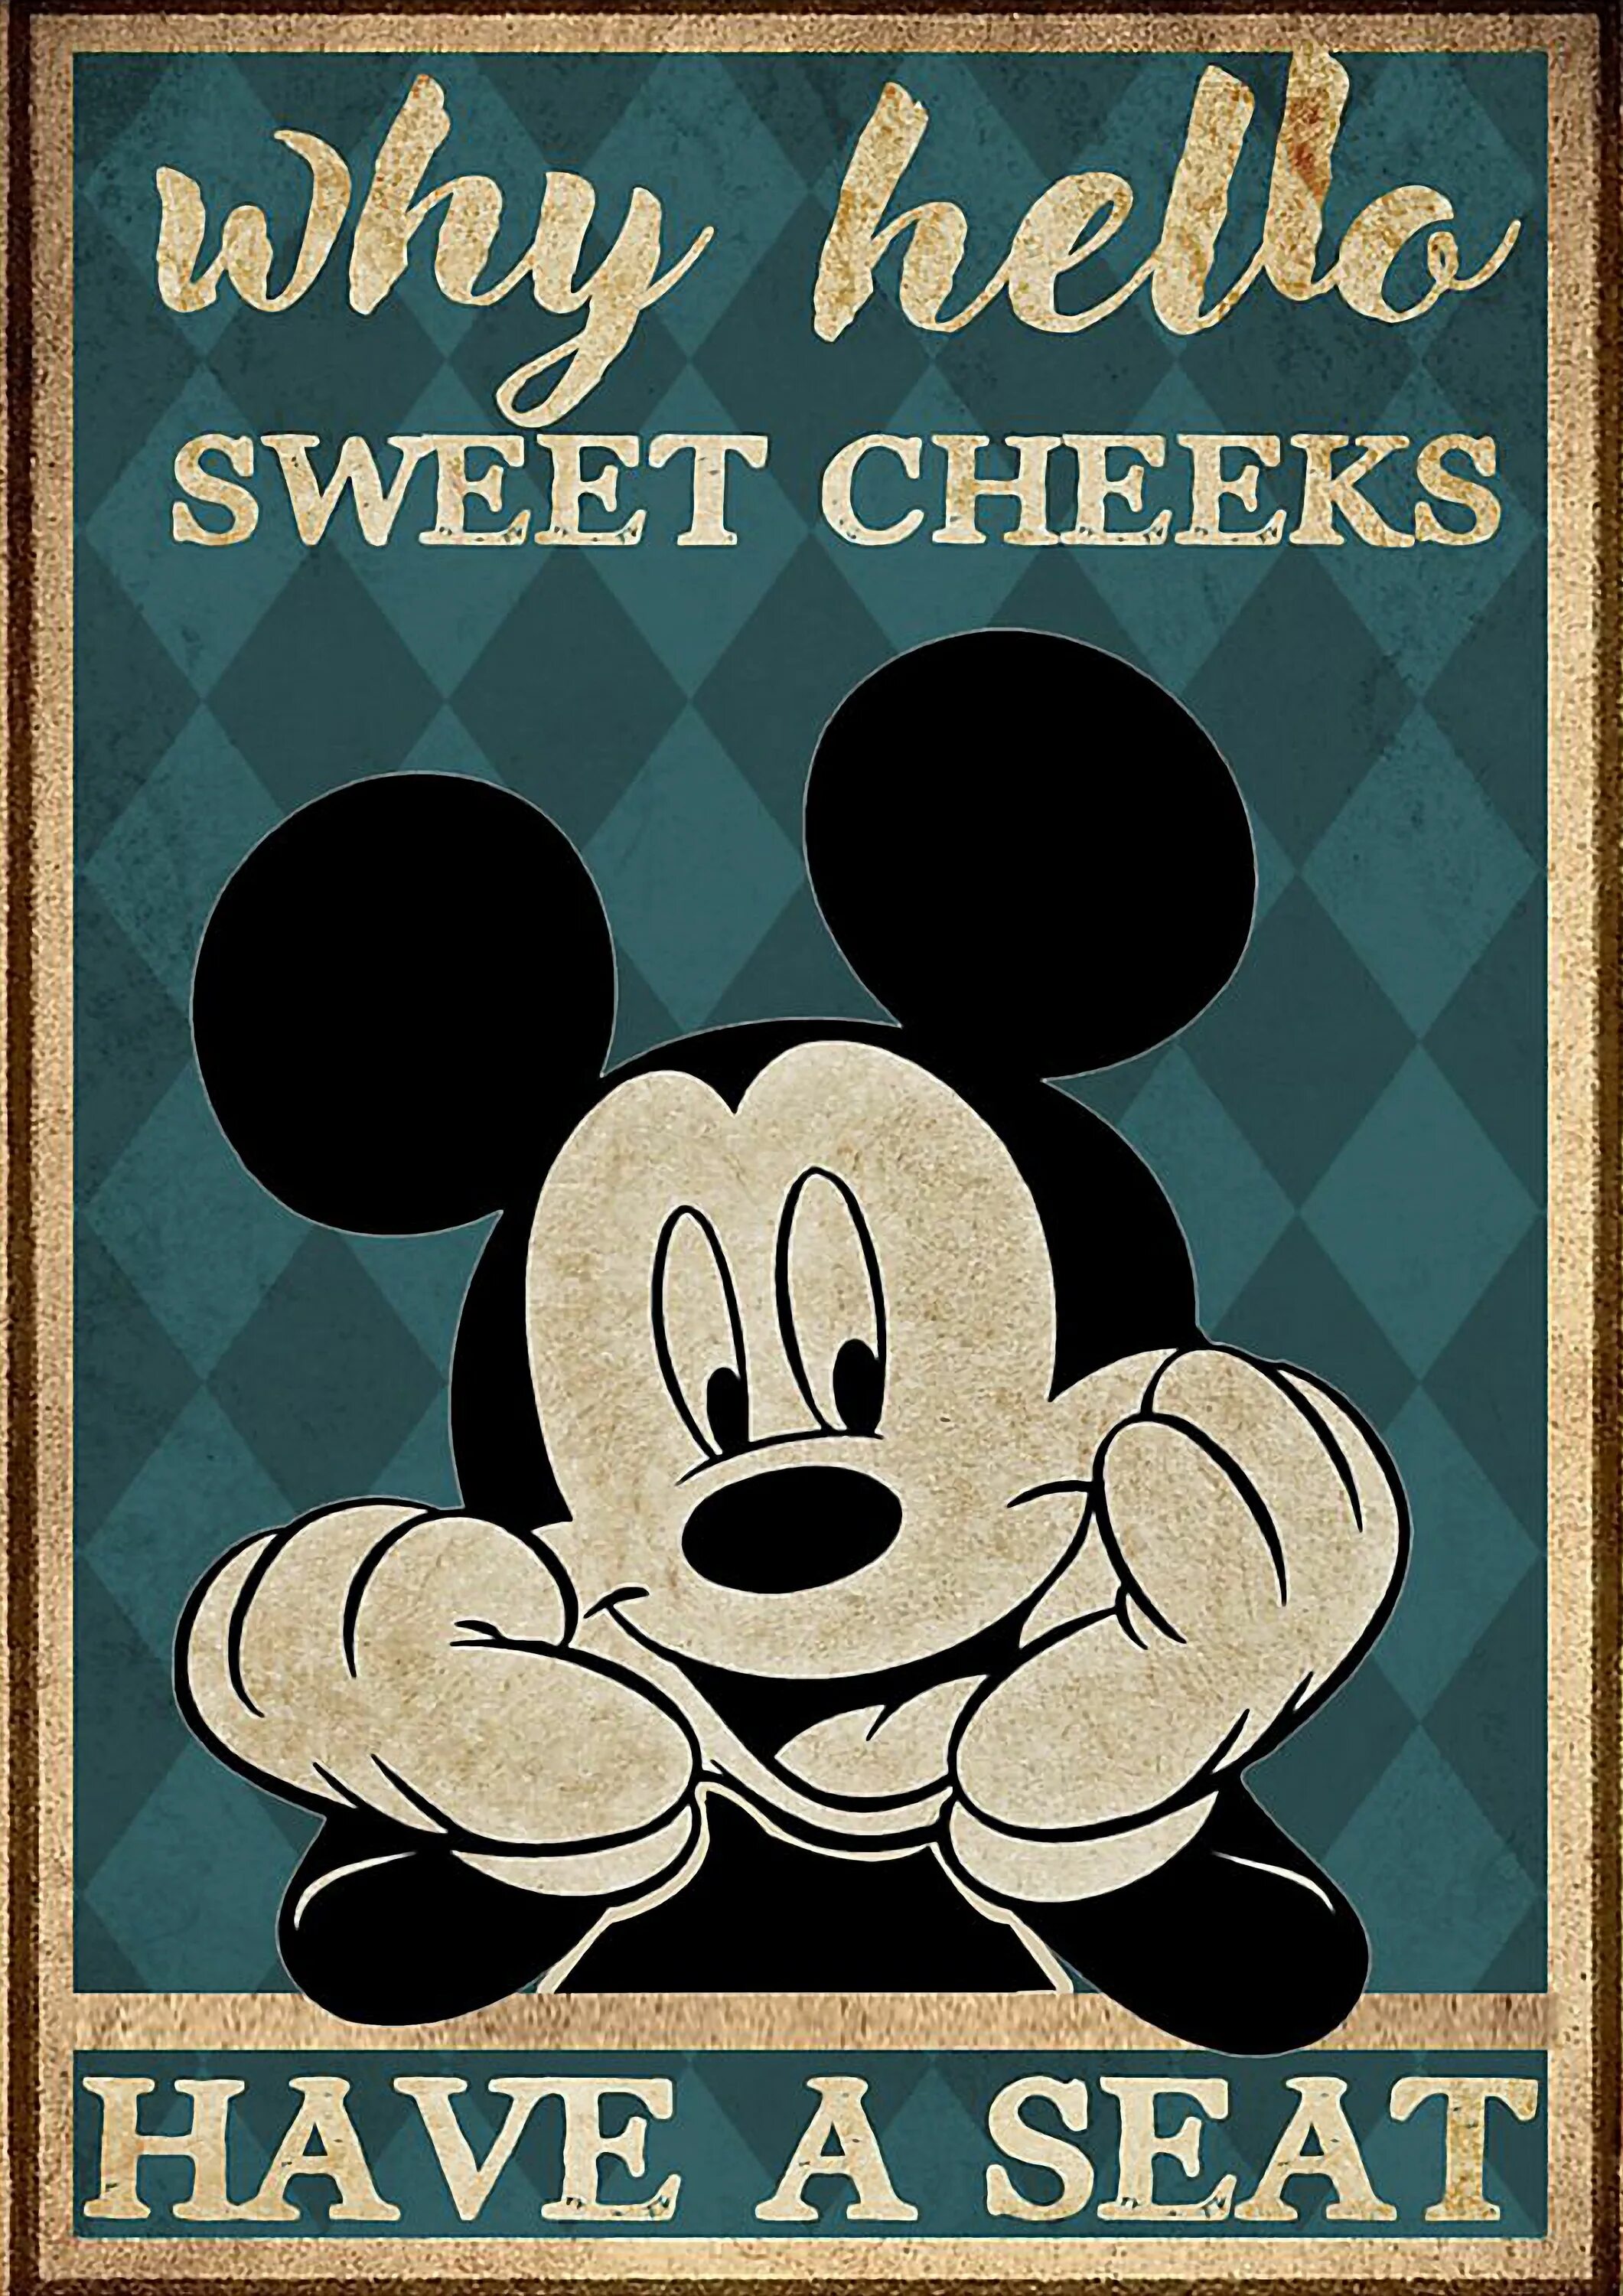 Постер "Микки Маус". Микки Маус плакат. Постер с Микки Маусом. Постер Микки Маус Винтаж.